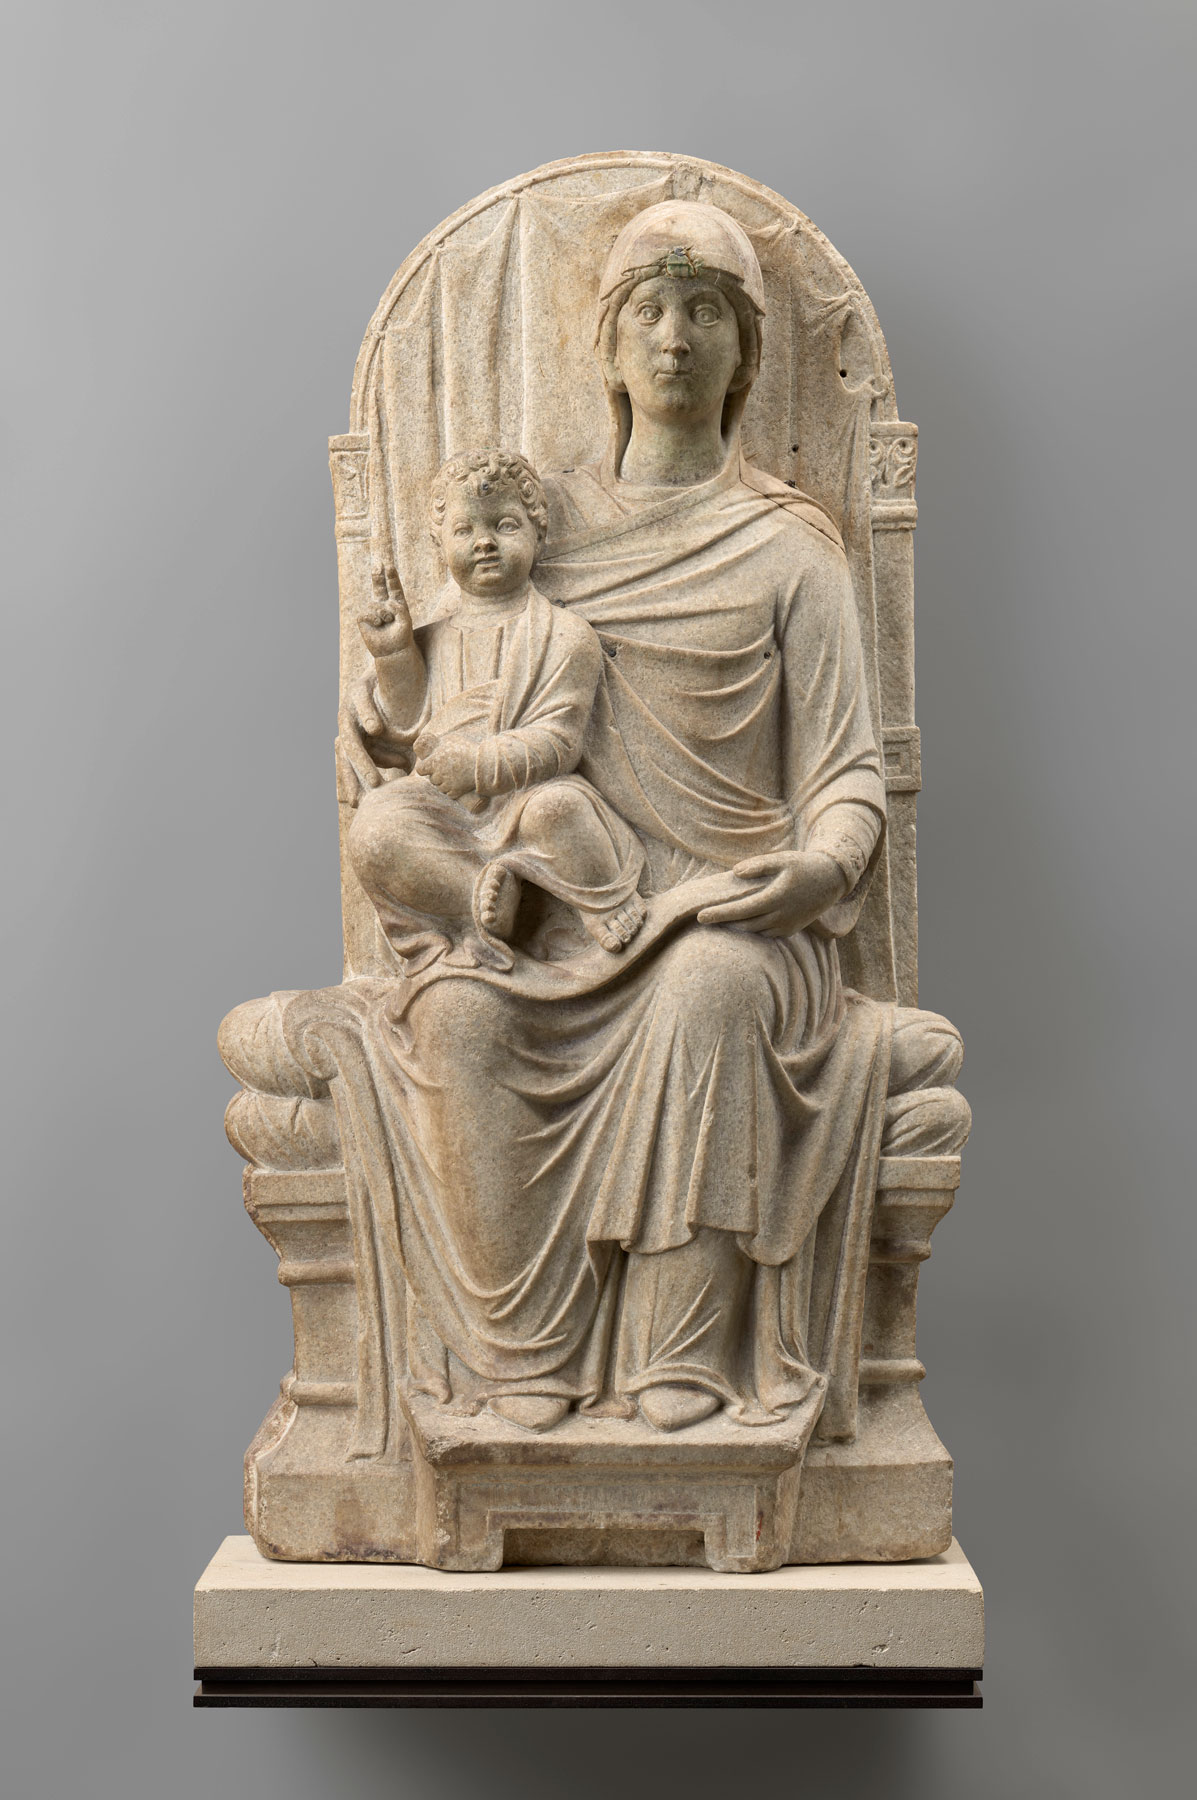 Maestro veneziano-ravennate, Madonna in trono con Bambino (fine del XIII secolo; marmo, 93,5 x 51,5 x 19,5 cm; Parigi, Louvre)
